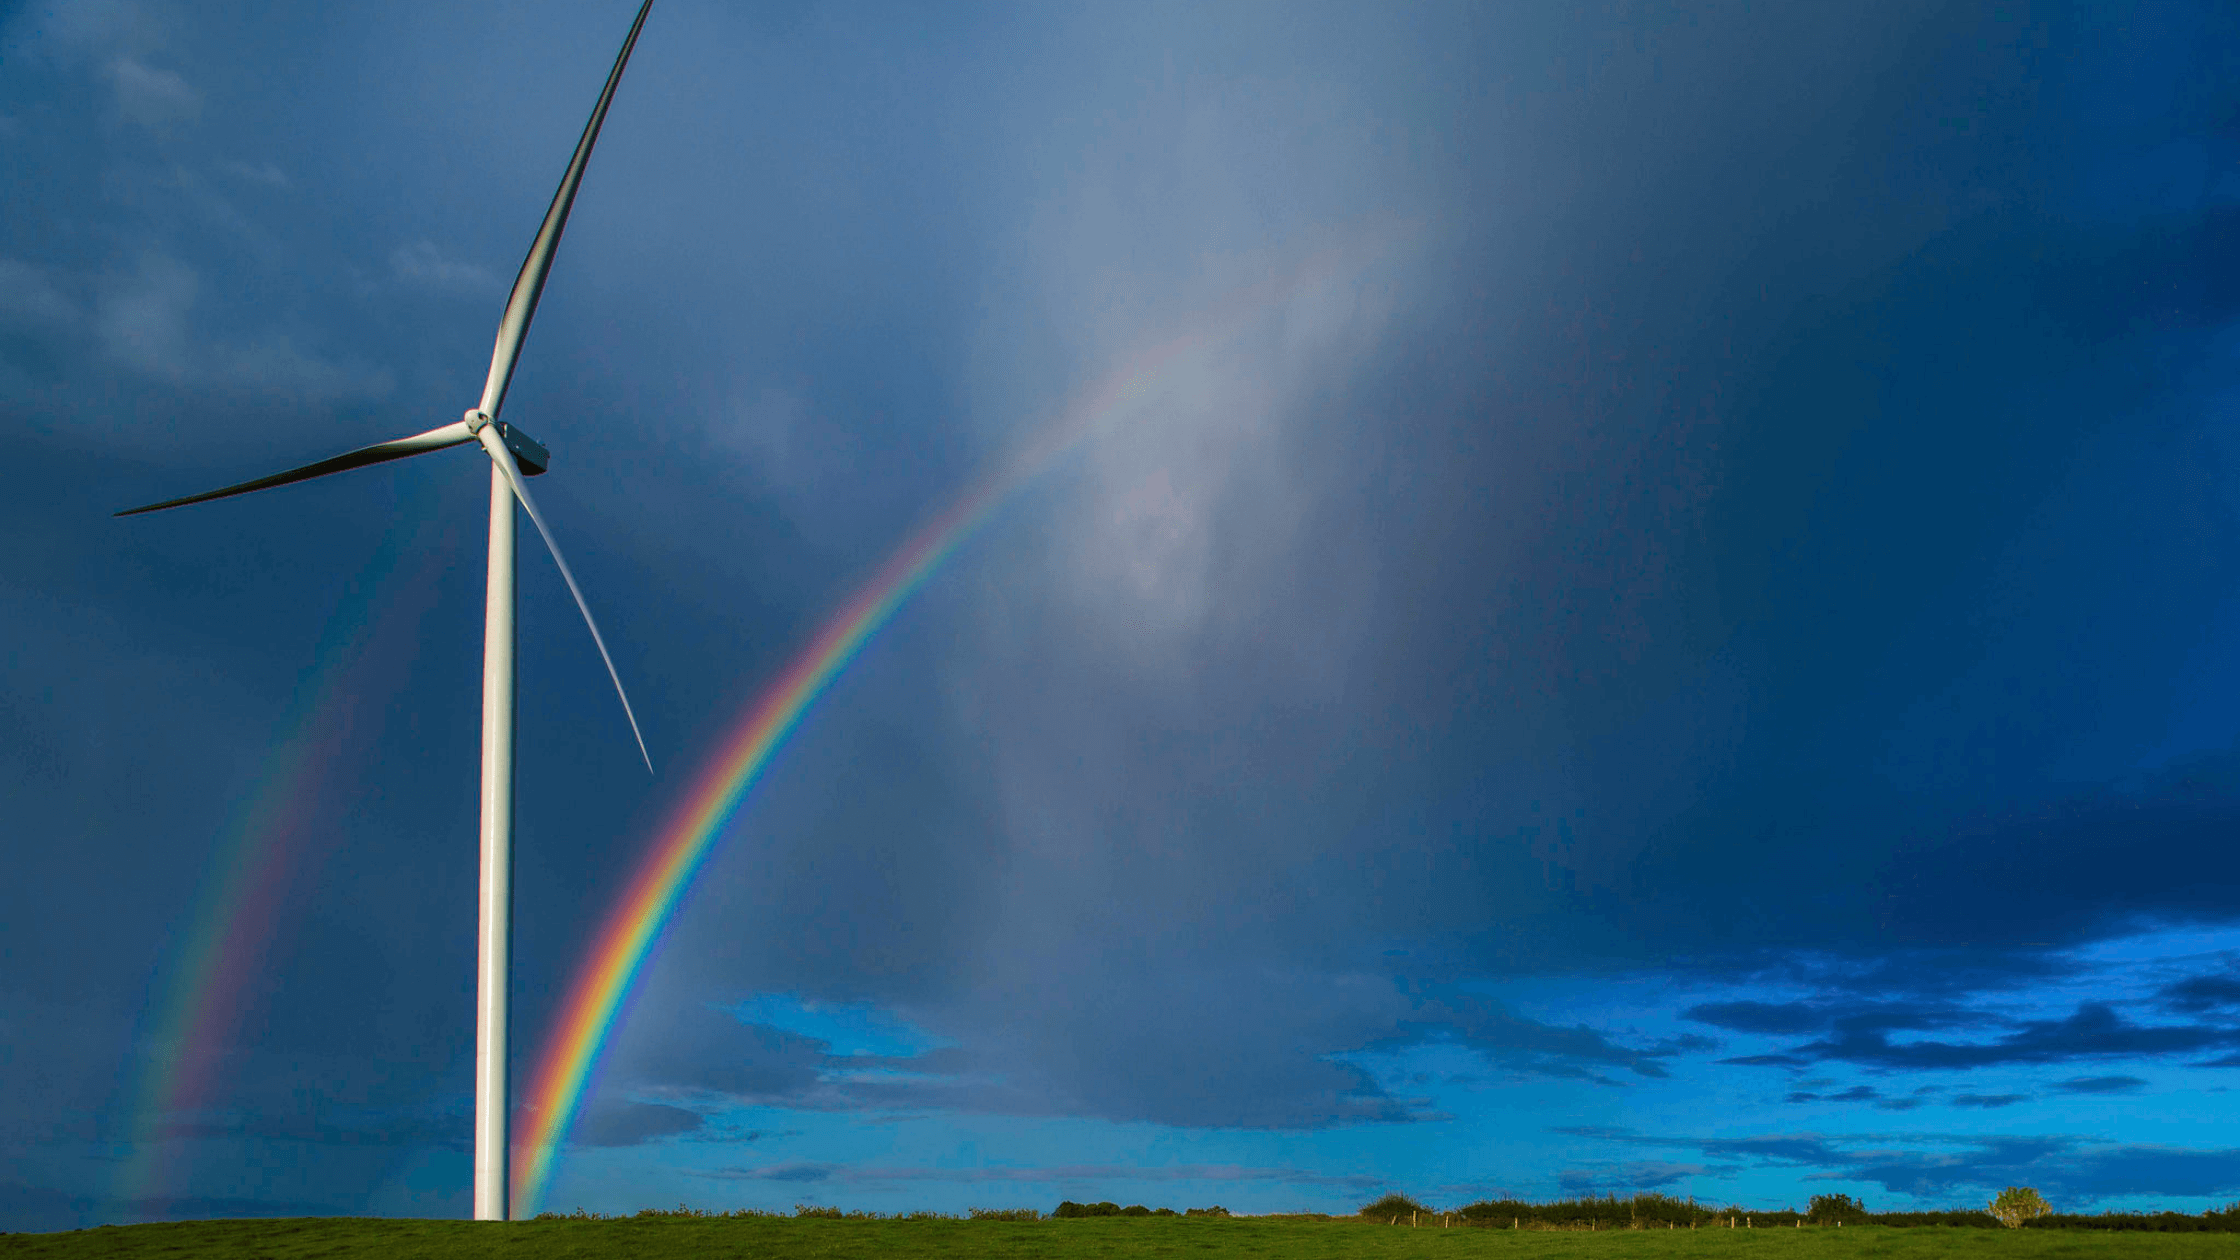 Generador Eólico Statkraft cielo azul arcoíris